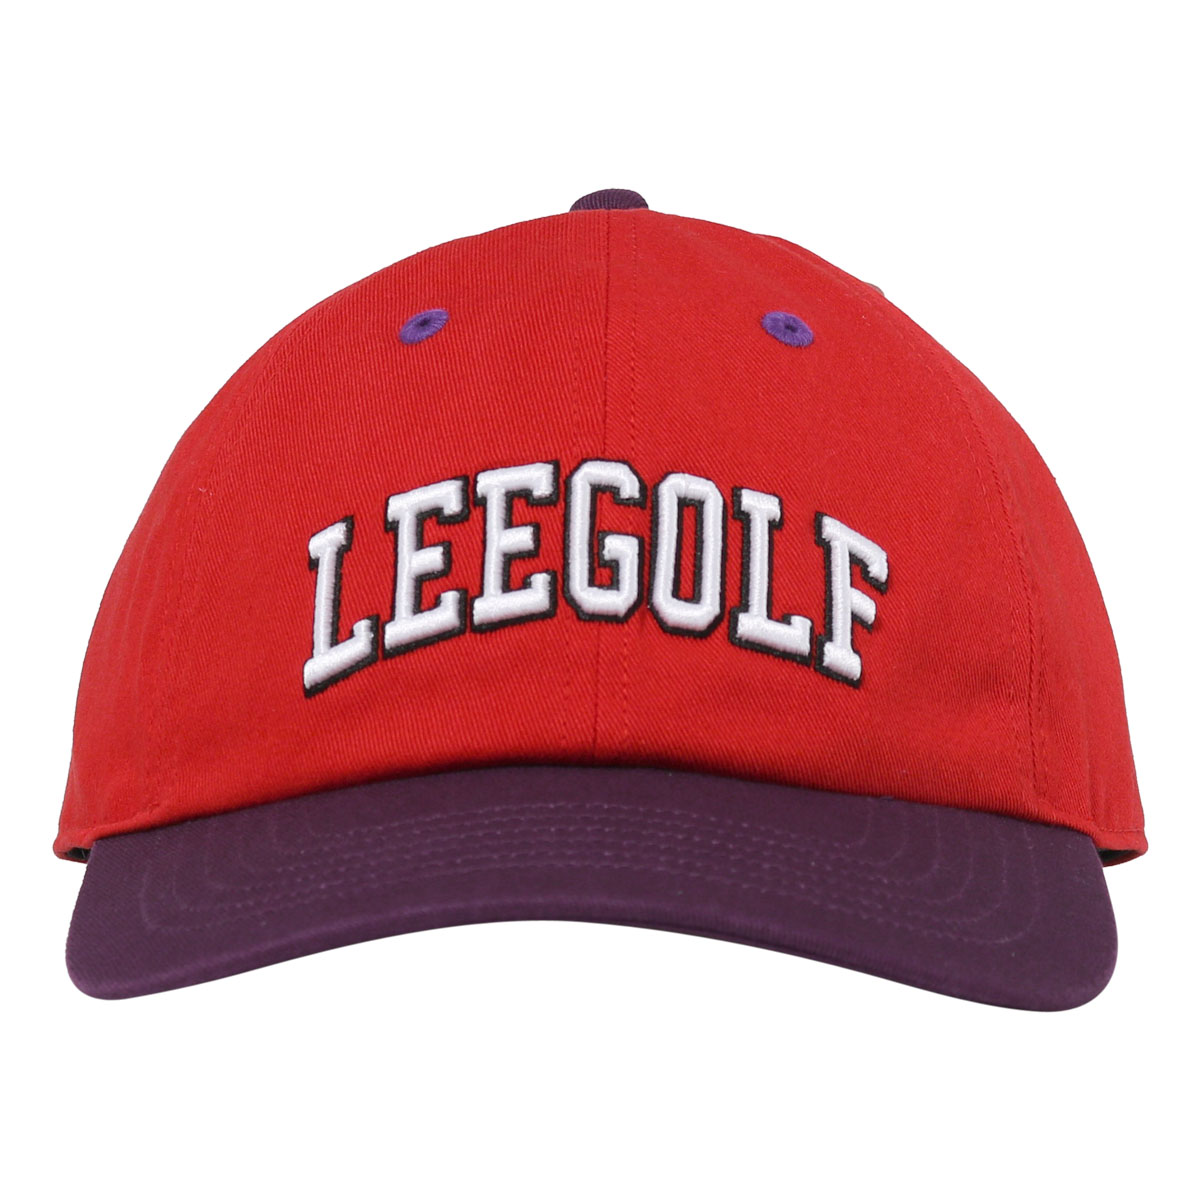 Lee ゴルフ キャップ ロゴ メンズ レディース LG4005 サイズ調整可能 帽子 リー